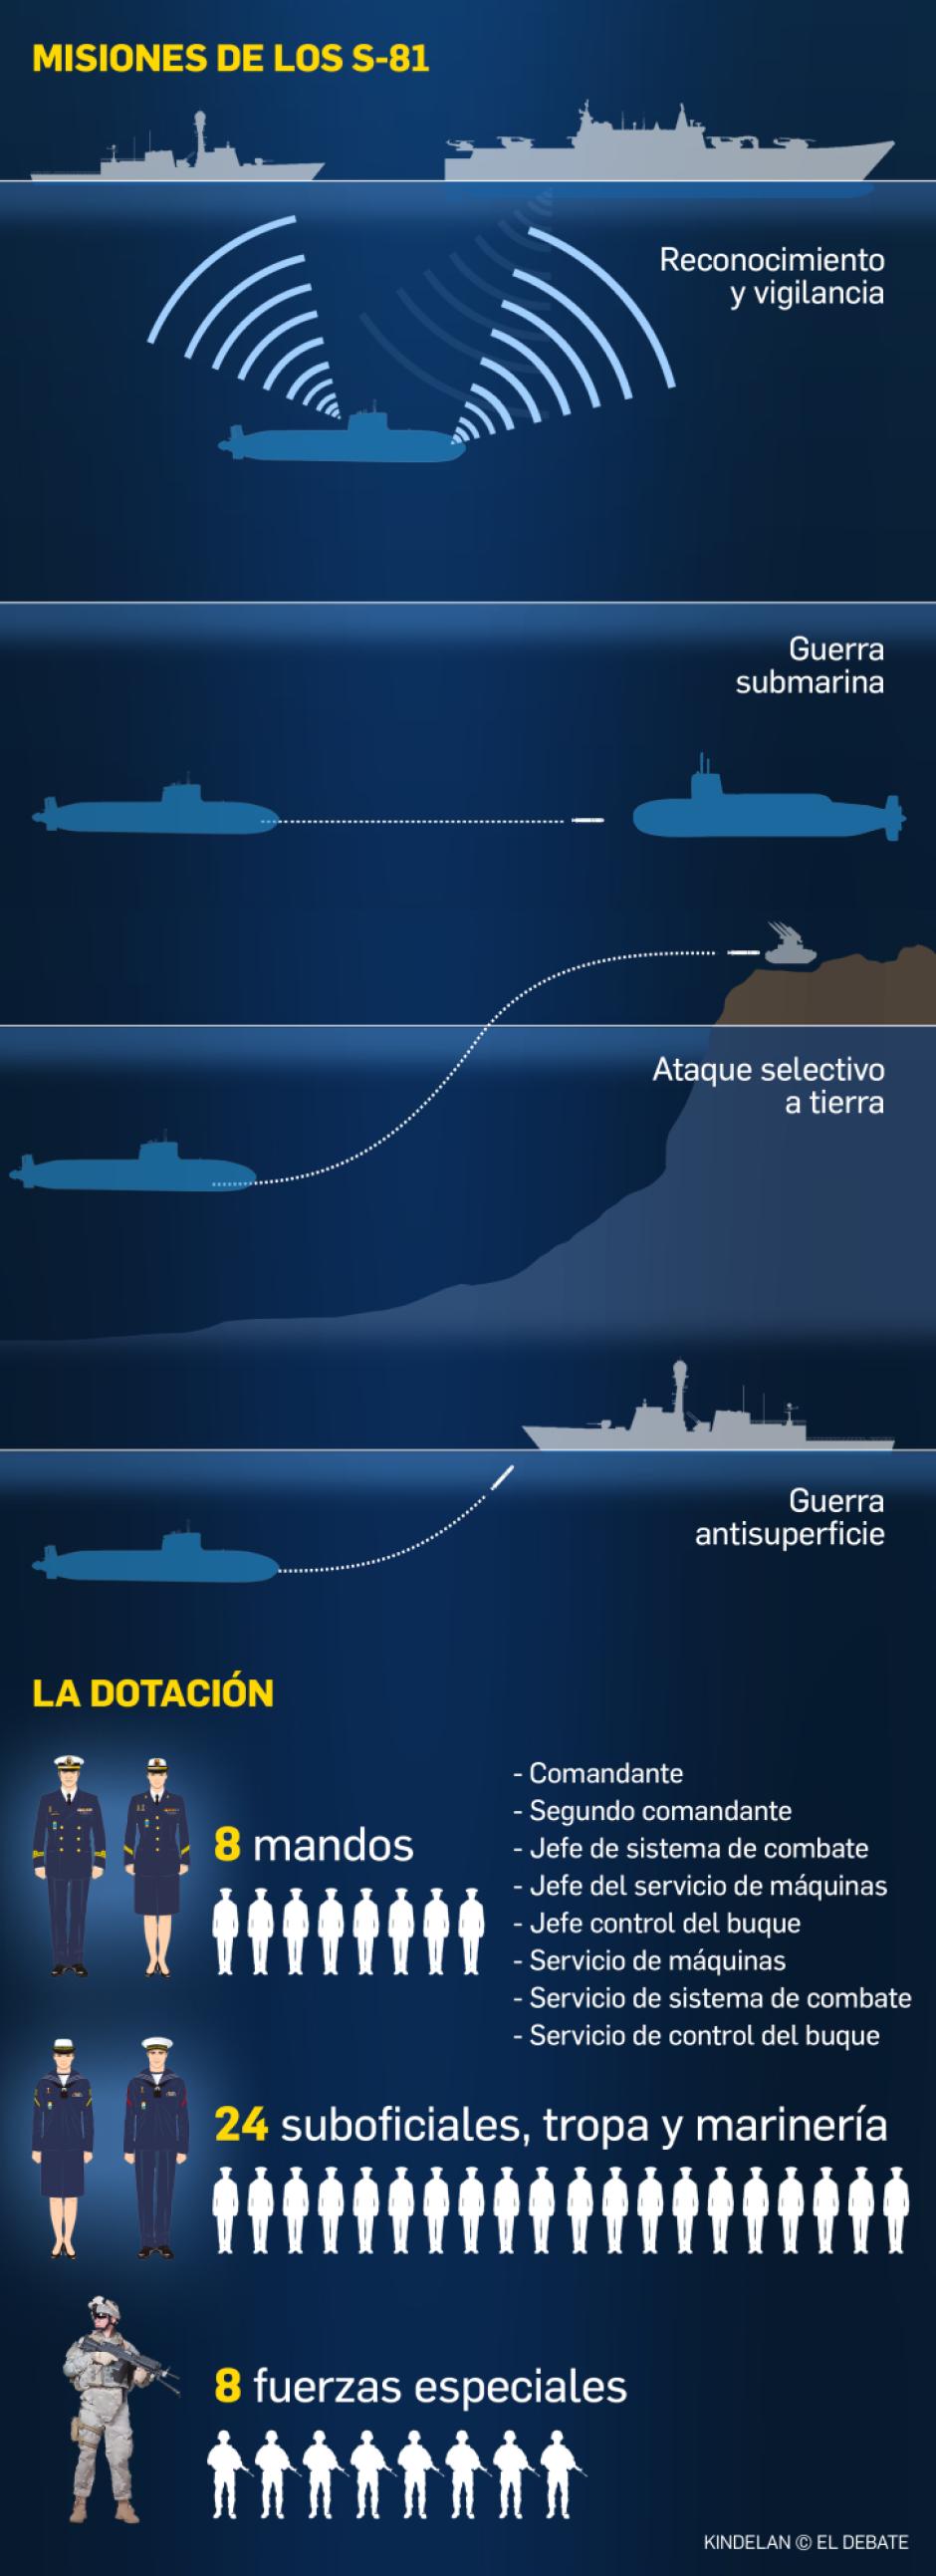 Submarinos de la clase S-80